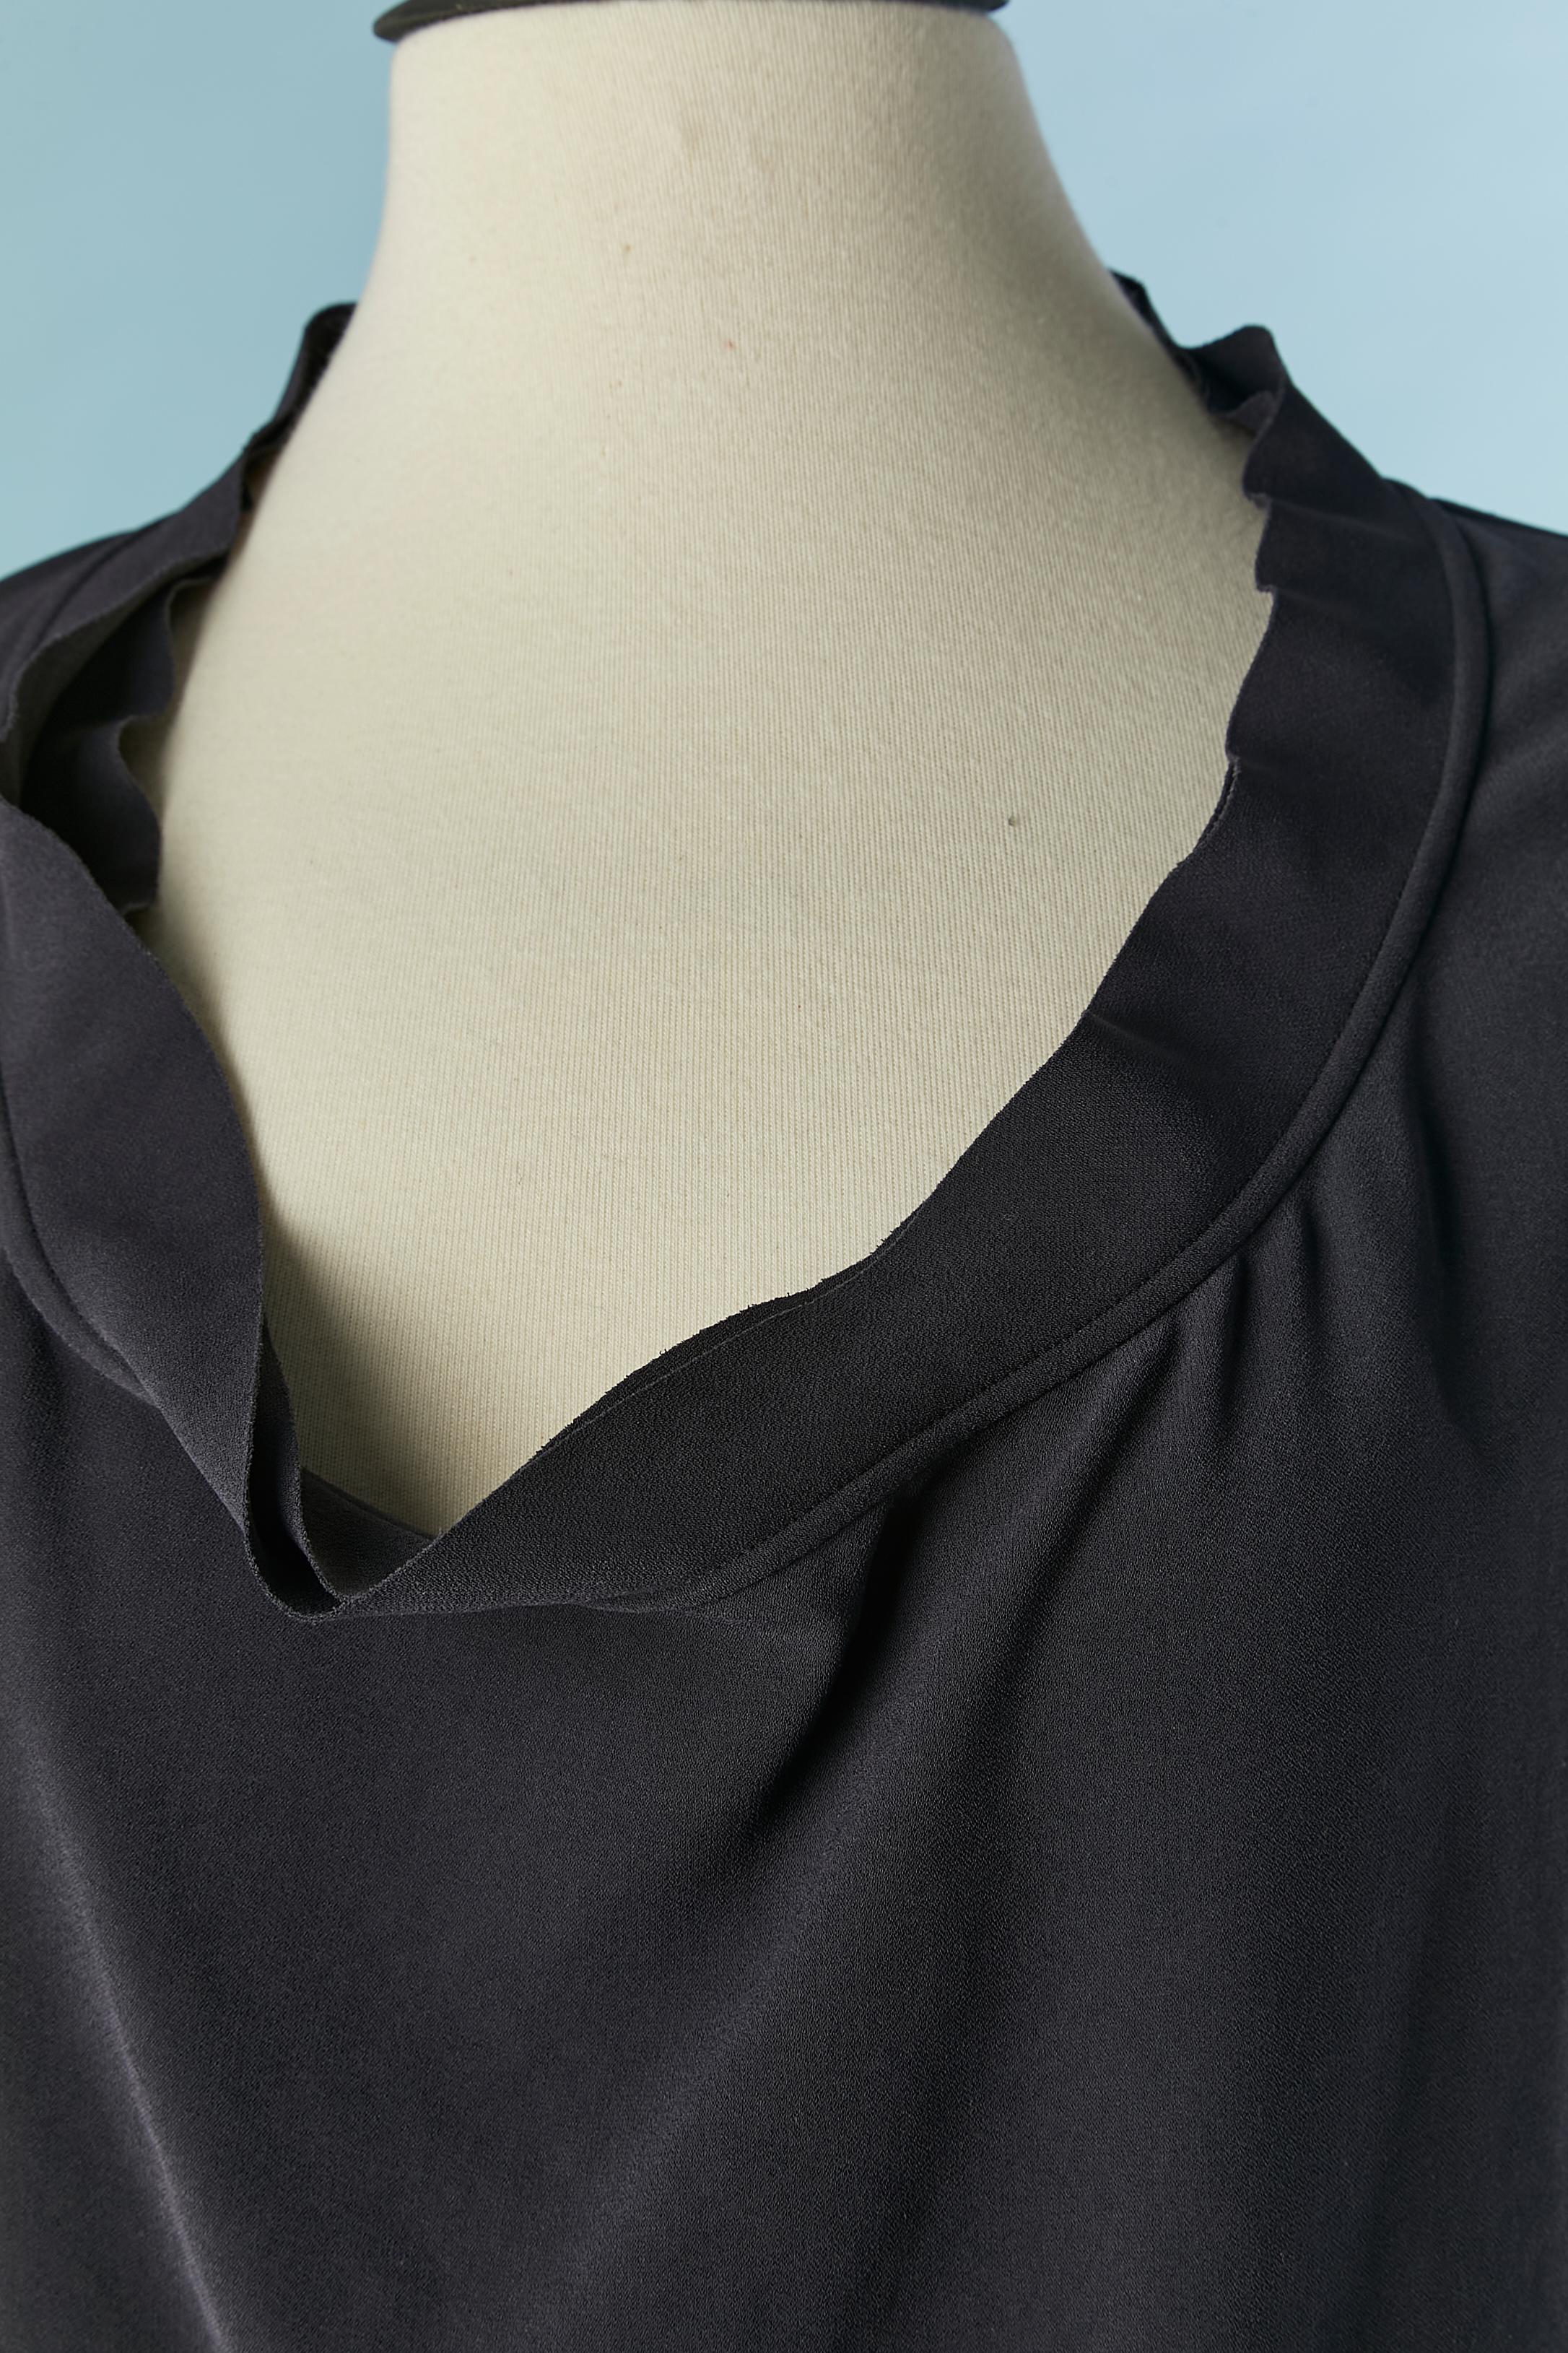 Top noir sans manches avec bord coupé à vif sur l'emmanchure et l'encolure et double épaisseur 
Composition du tissu : 60% triacétate, 40% polyester. 
I.L.A. 